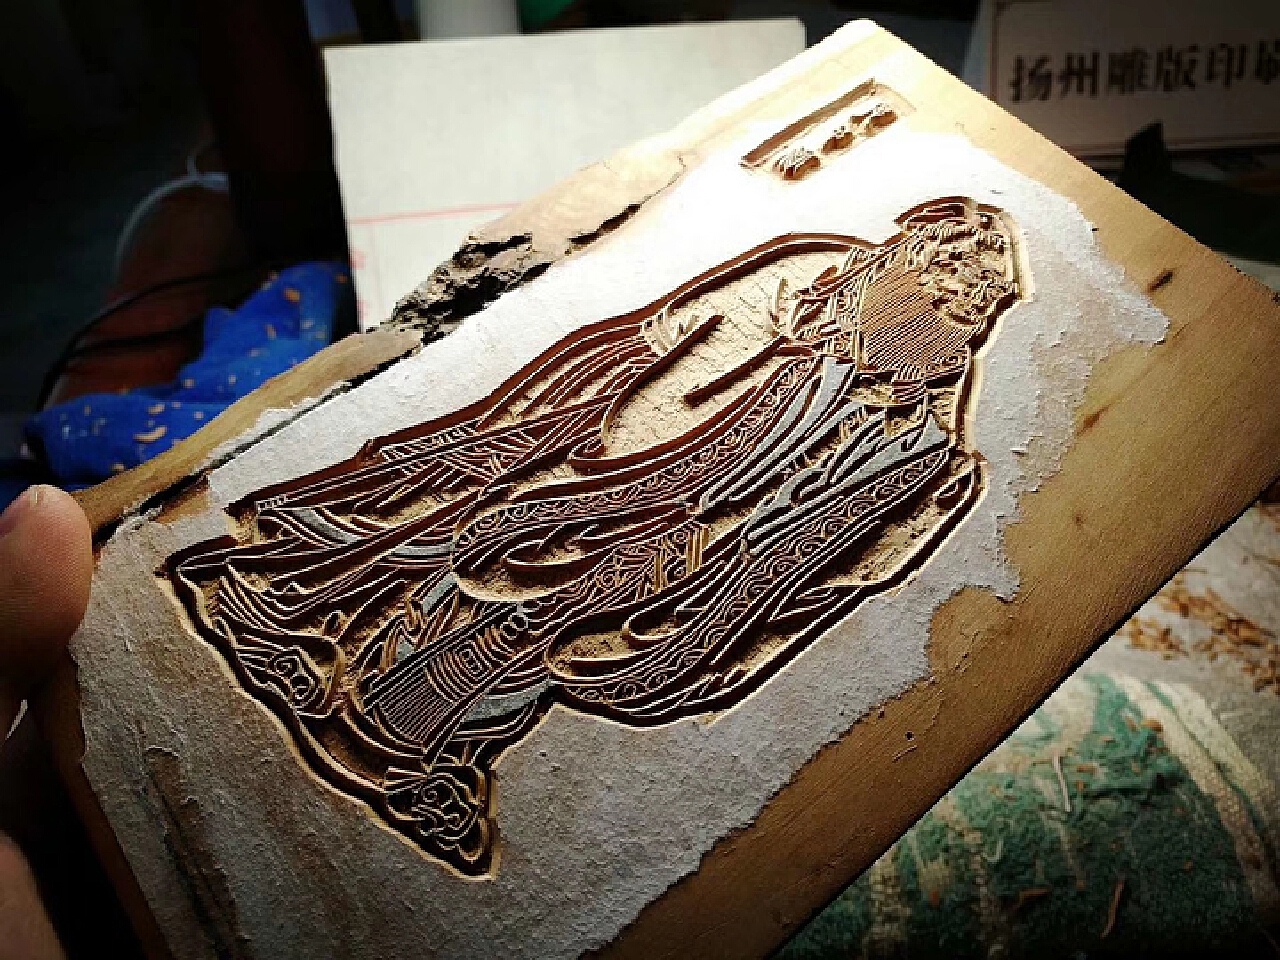 參訪中國古代四大雕版印刷四堡坊刻 體驗雕版印刷傳承一脈薪火 | 臺灣人民報